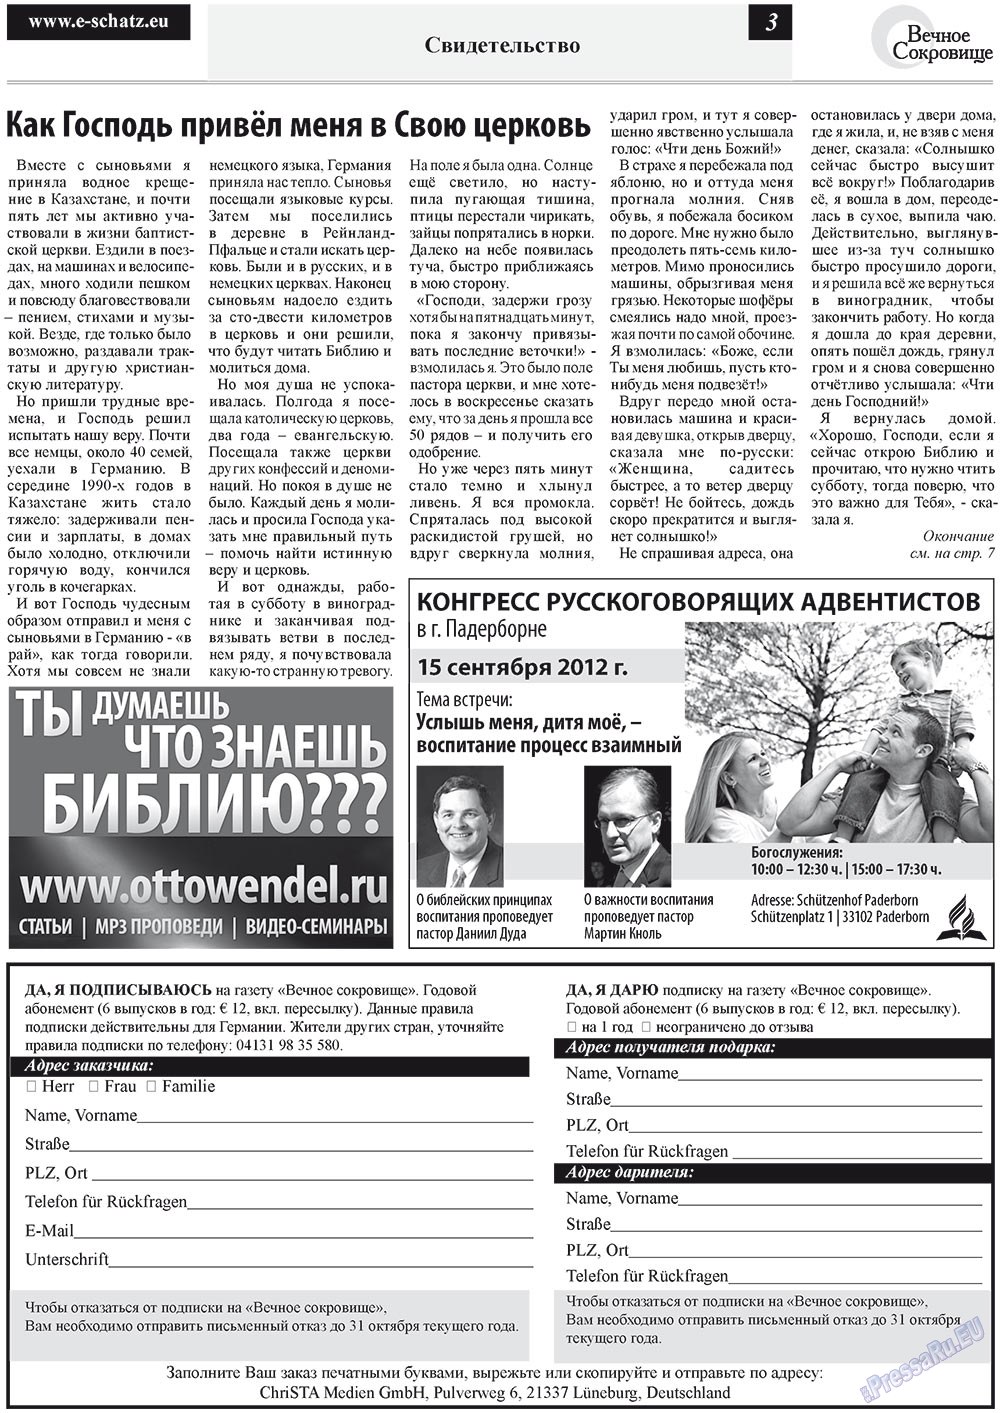 Вечное сокровище, газета. 2012 №4 стр.3